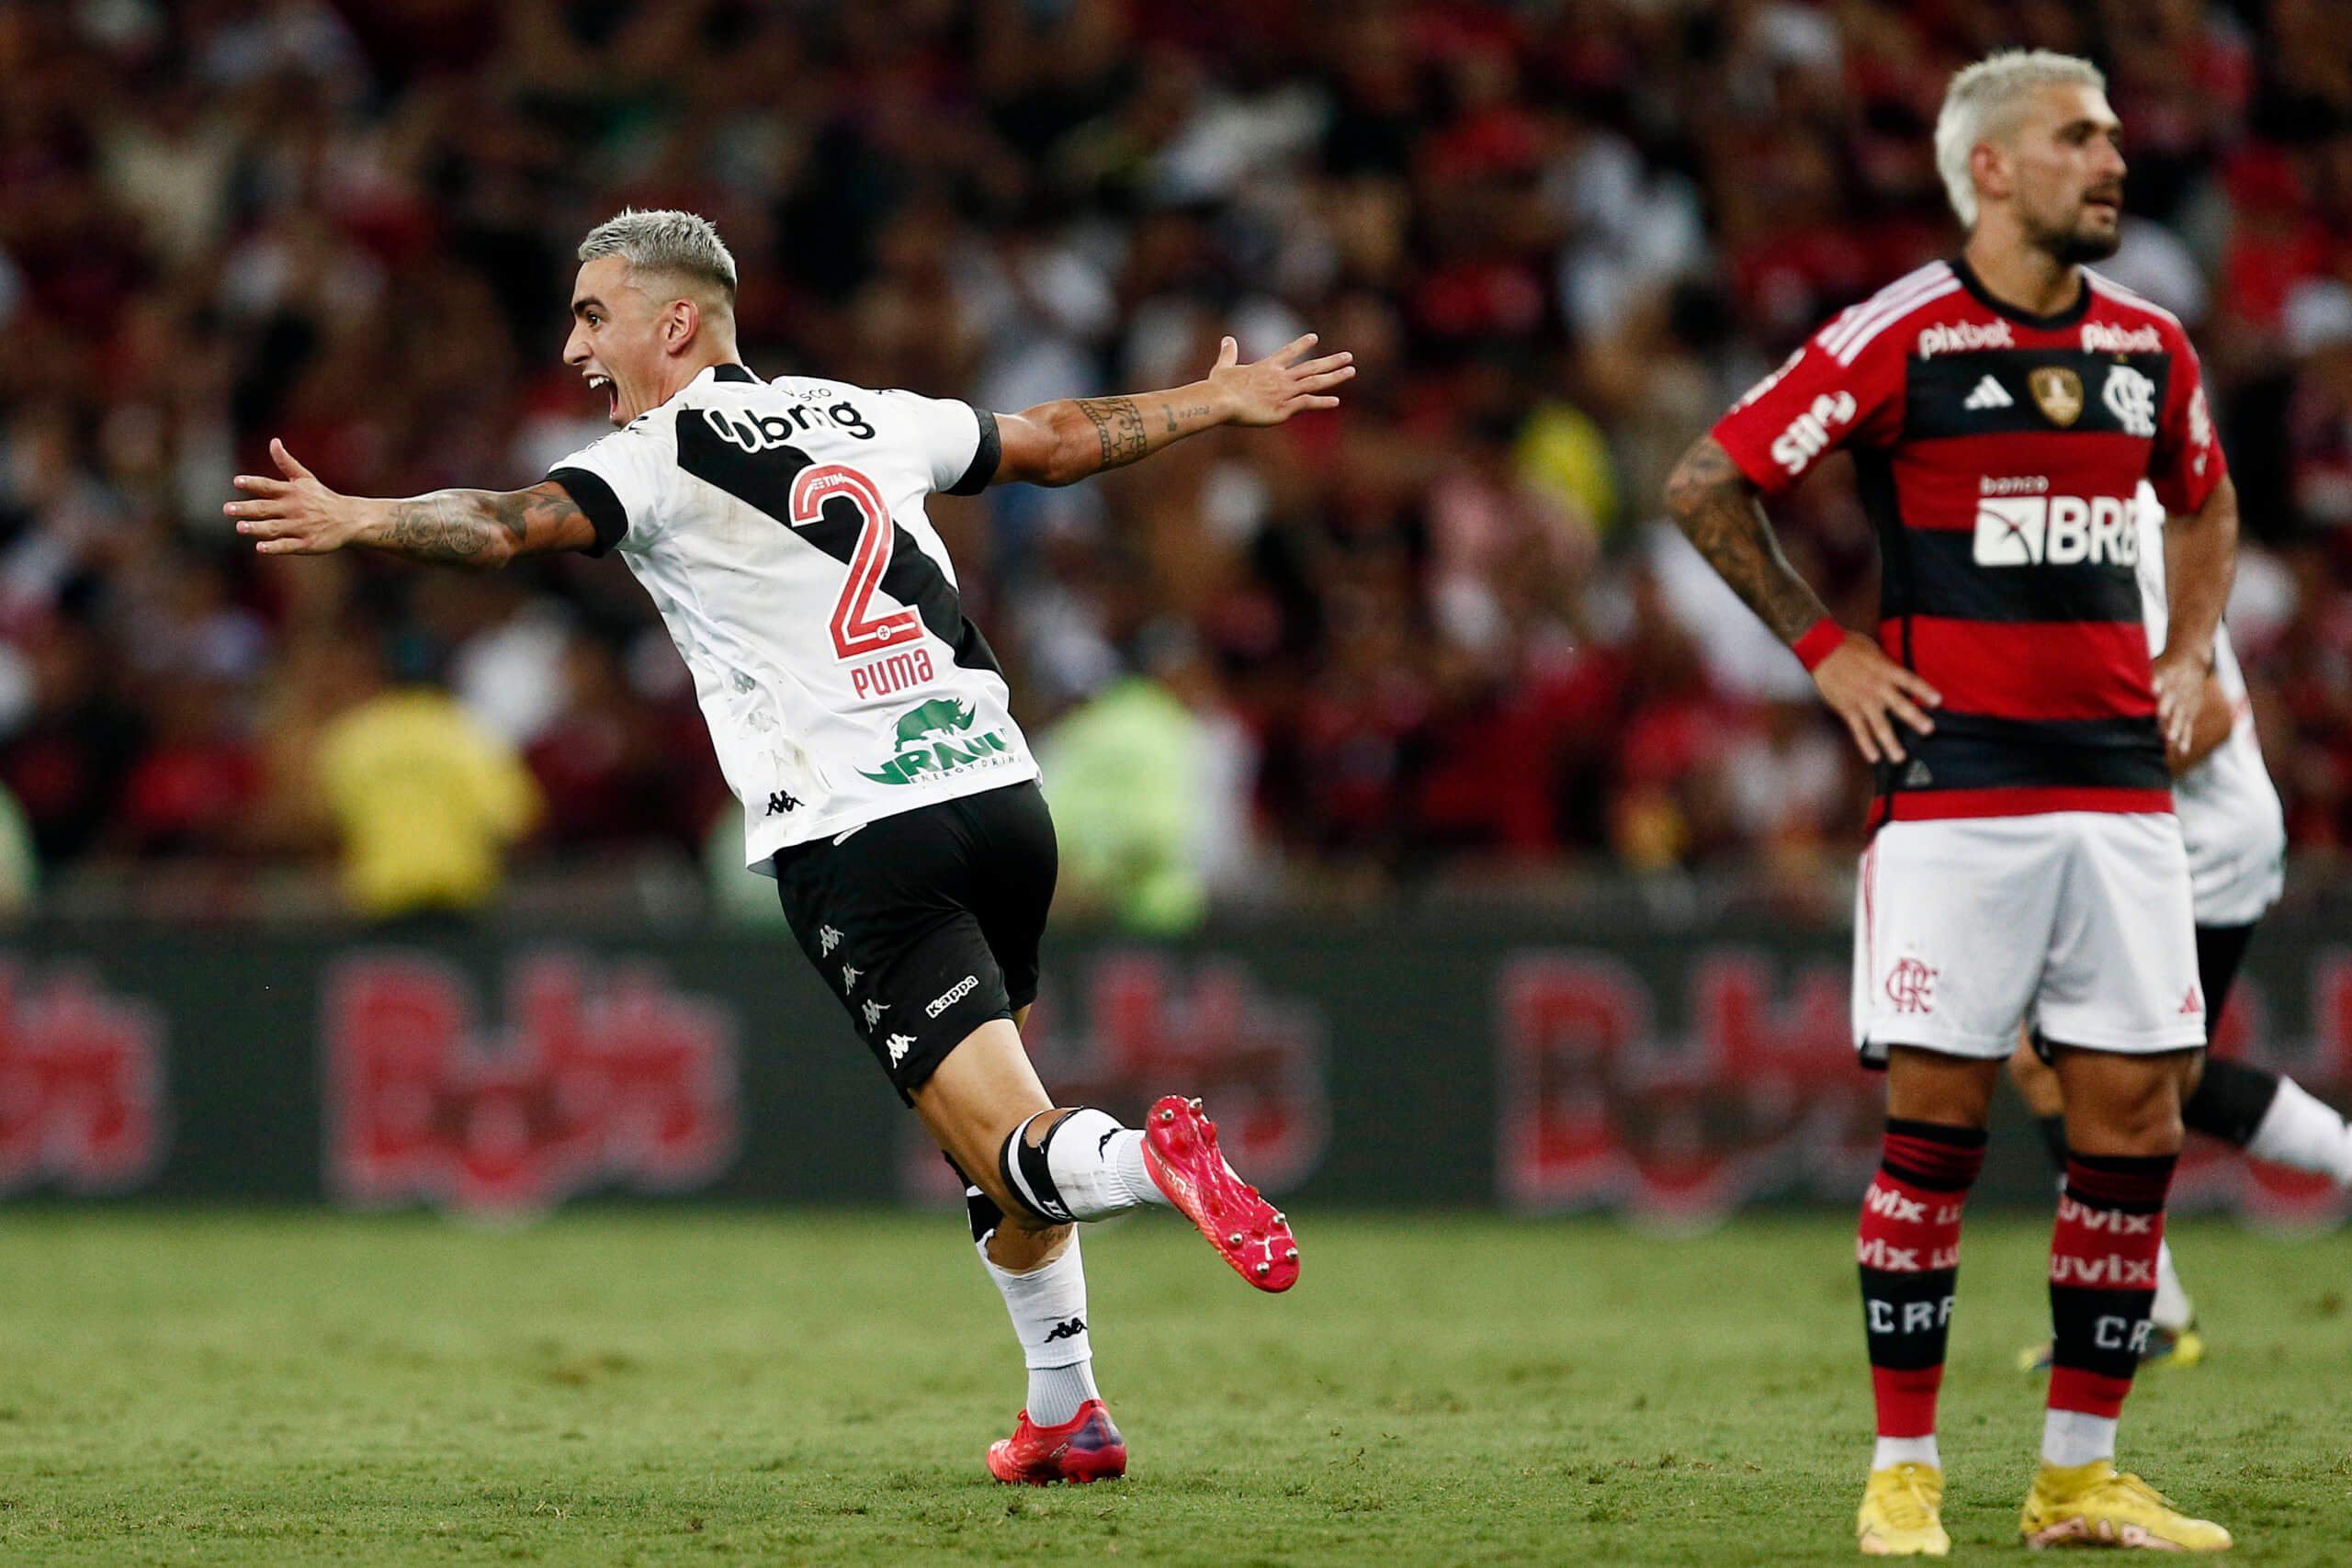 Pumita comemora o único gol do Vasco no Clássico dos Milhões